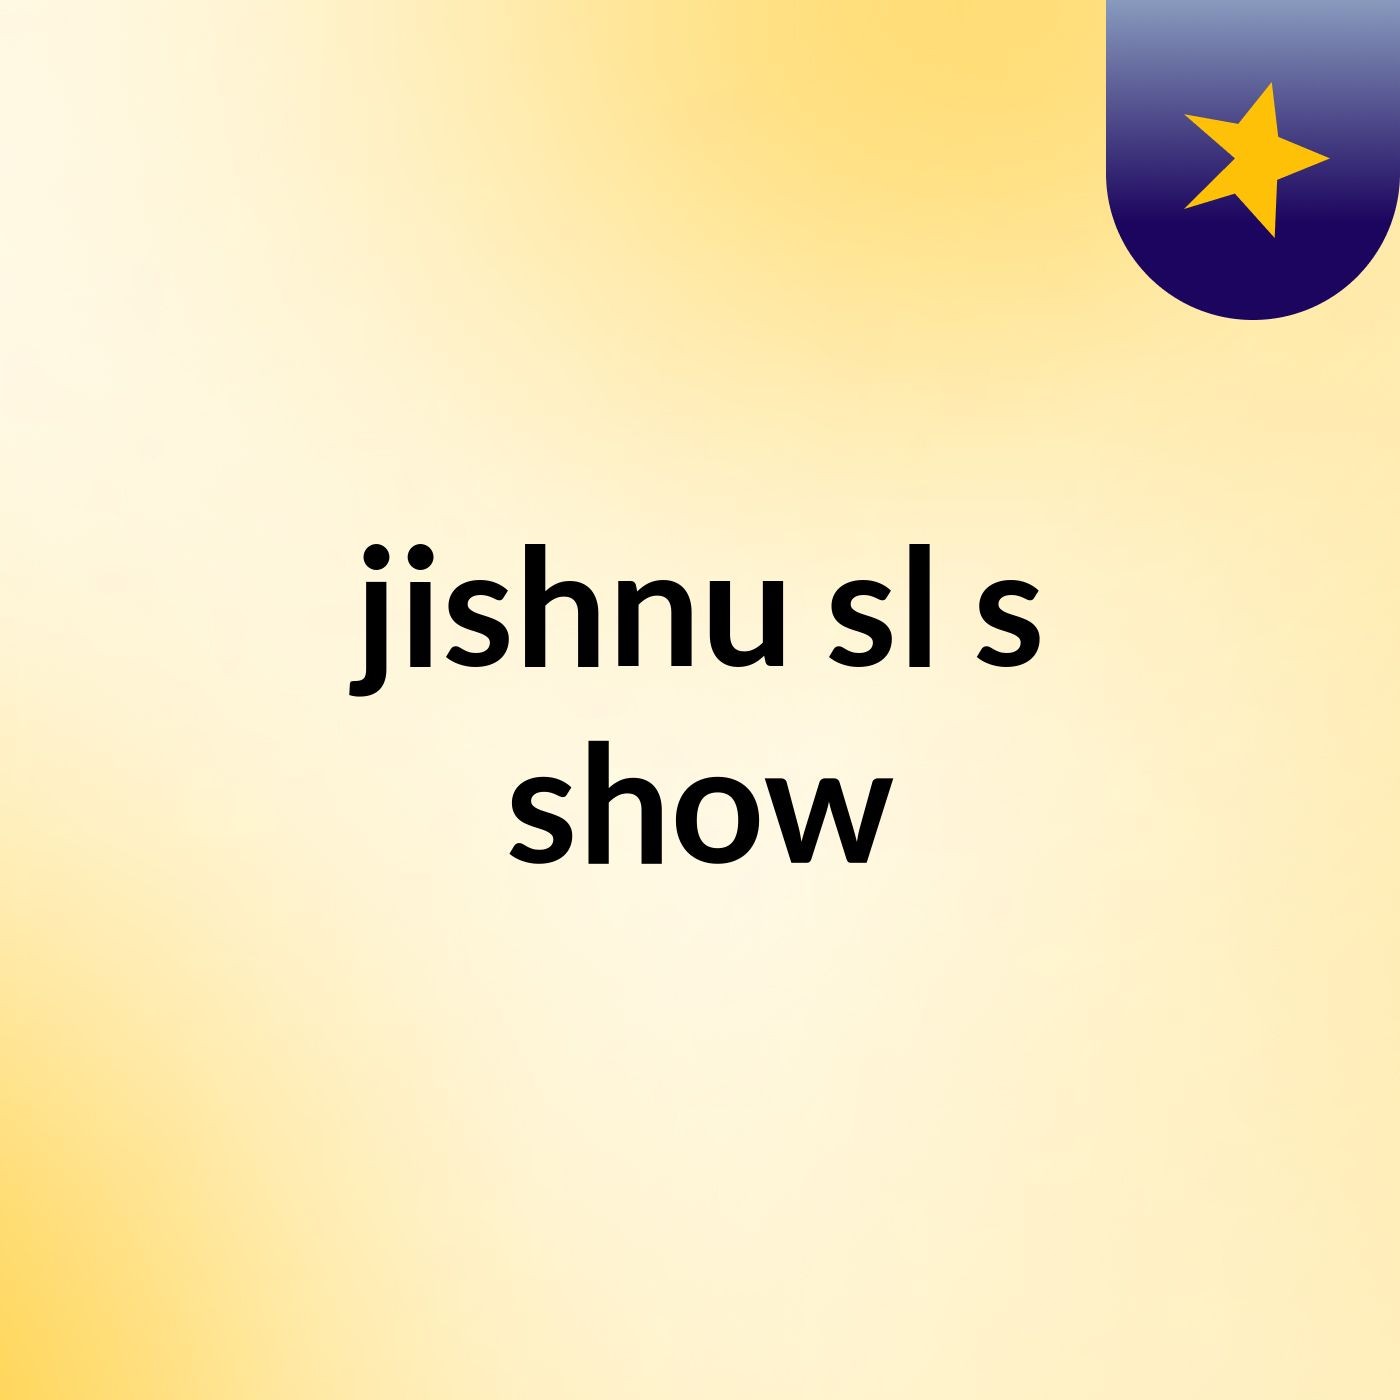 jishnu sl's show